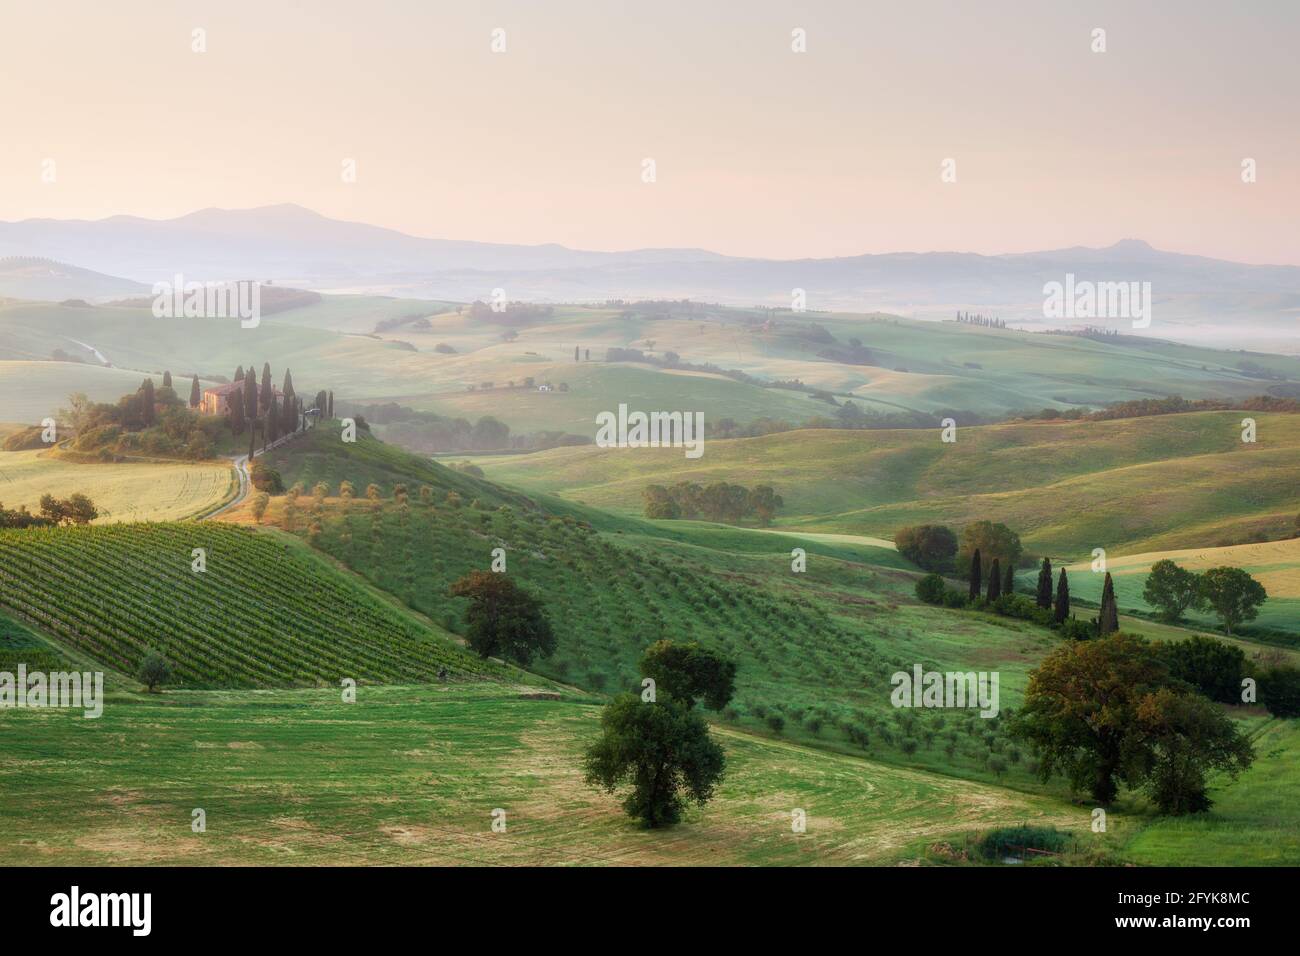 La célèbre ferme Belverdere, baignée de lumière matinale, se trouve au cœur de la Toscane, dans la vallée du Val d'Orcia, en Toscane. Banque D'Images